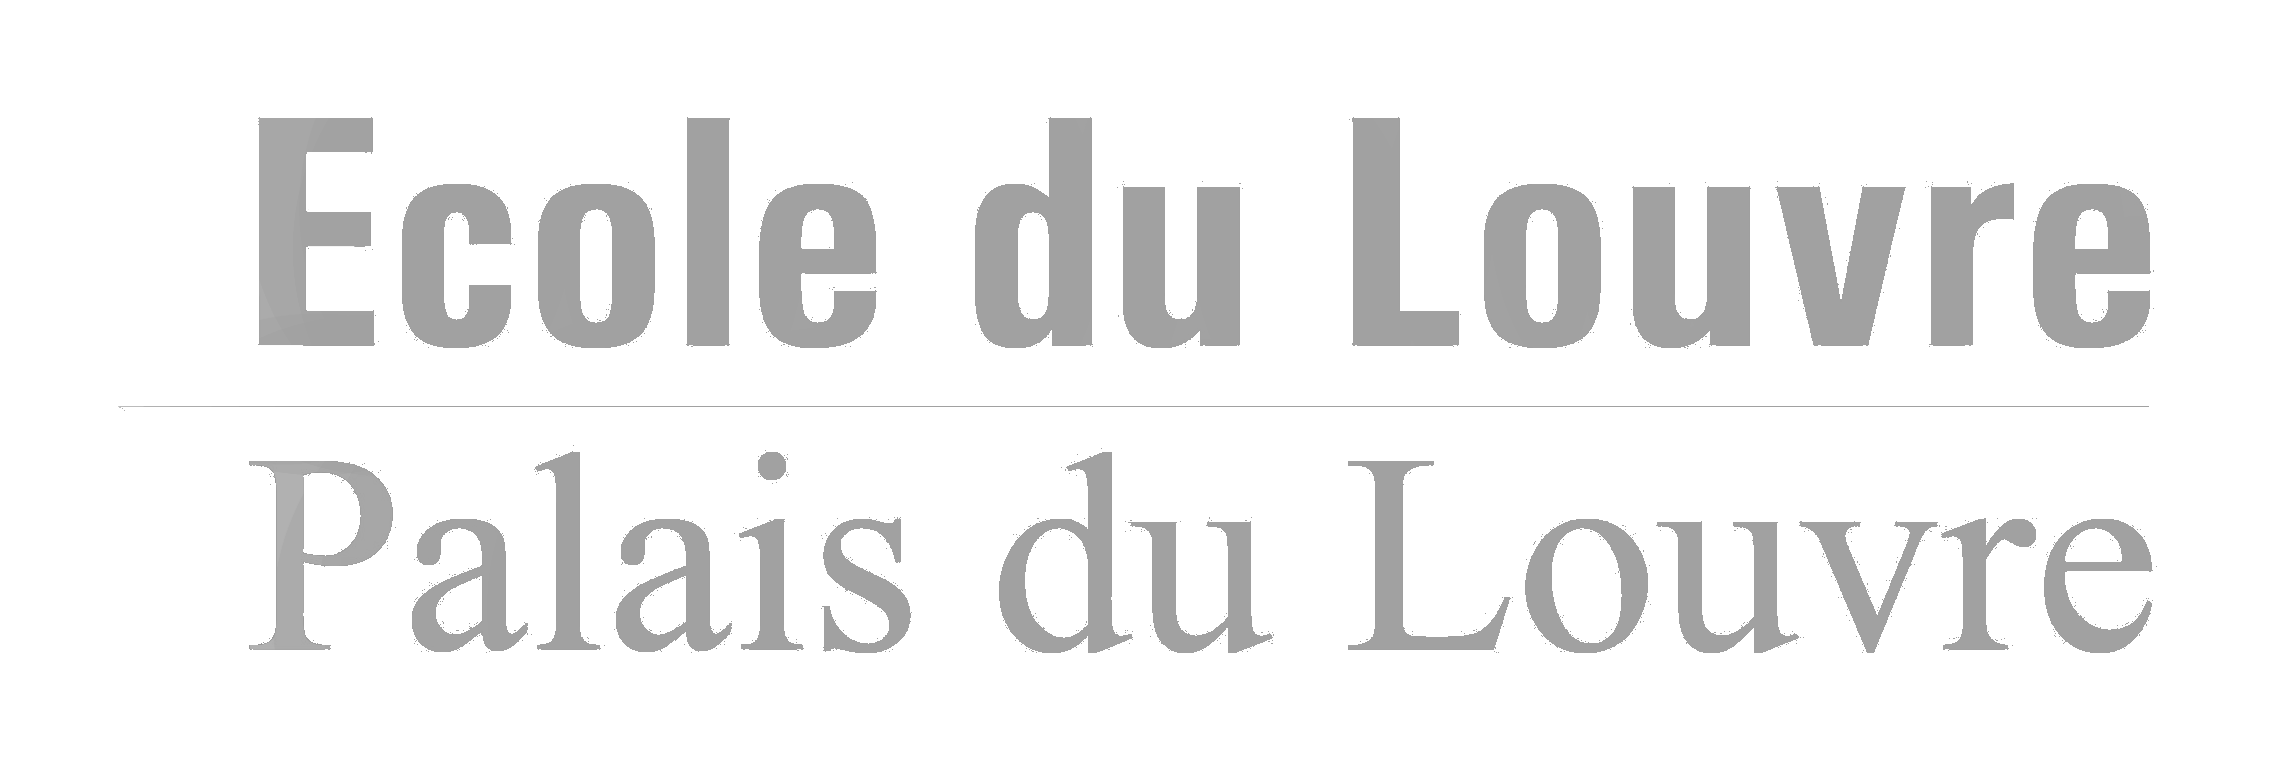 logo-ecole-louvre-gris-fond-transparent